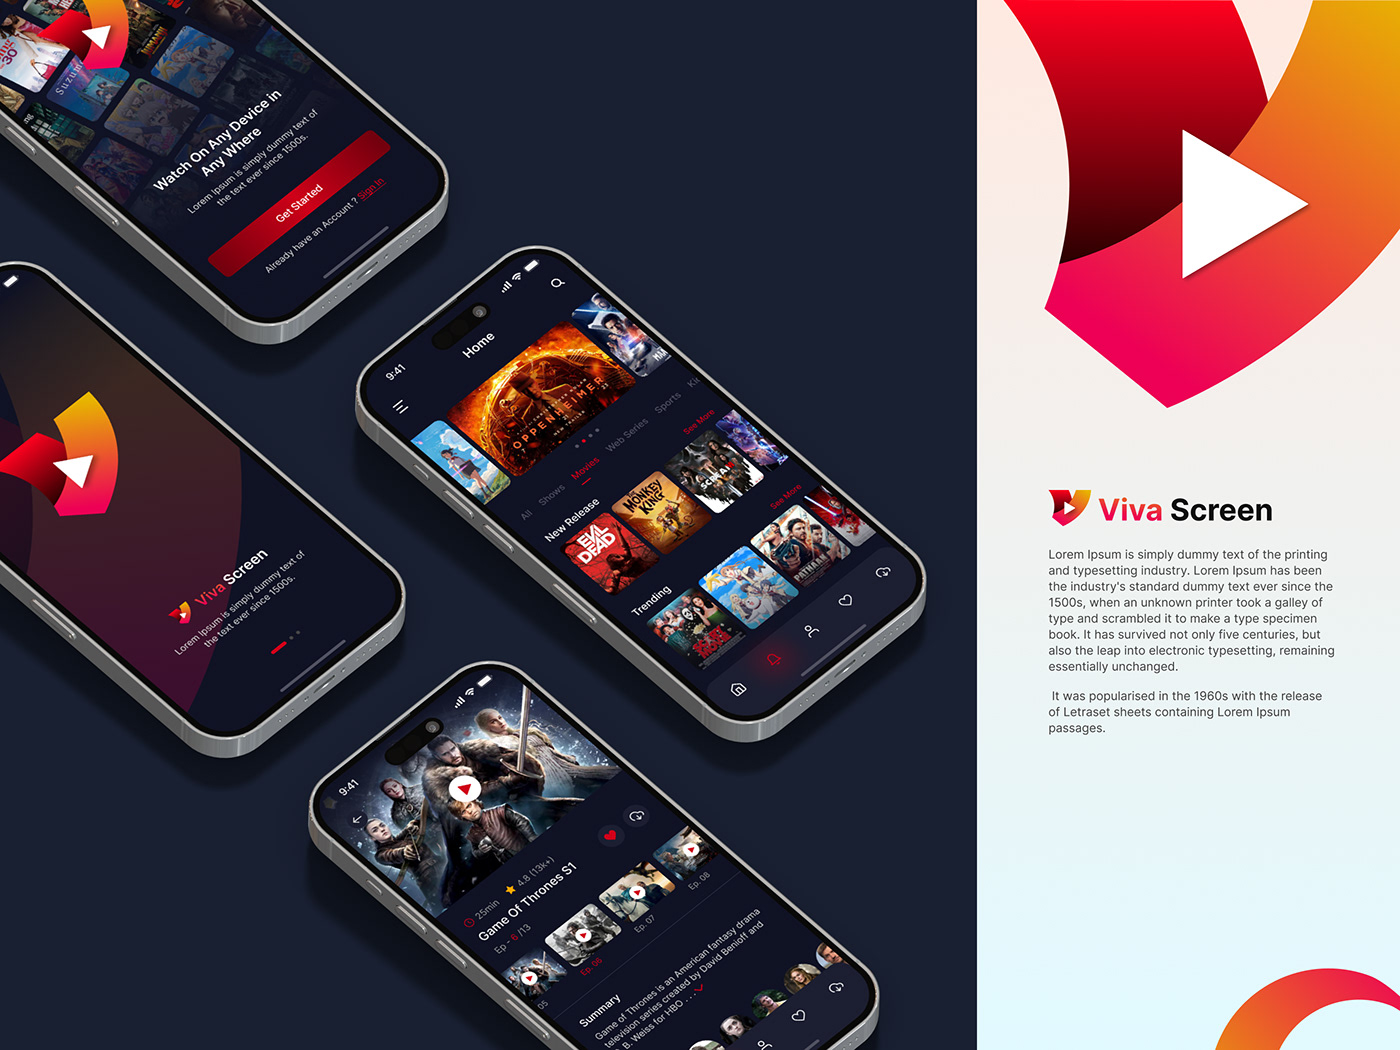 Streaming Entertainment appdevelopment Mobileapps OTTApps ottplatform UserExperience VivaScreen WatchAnywhere